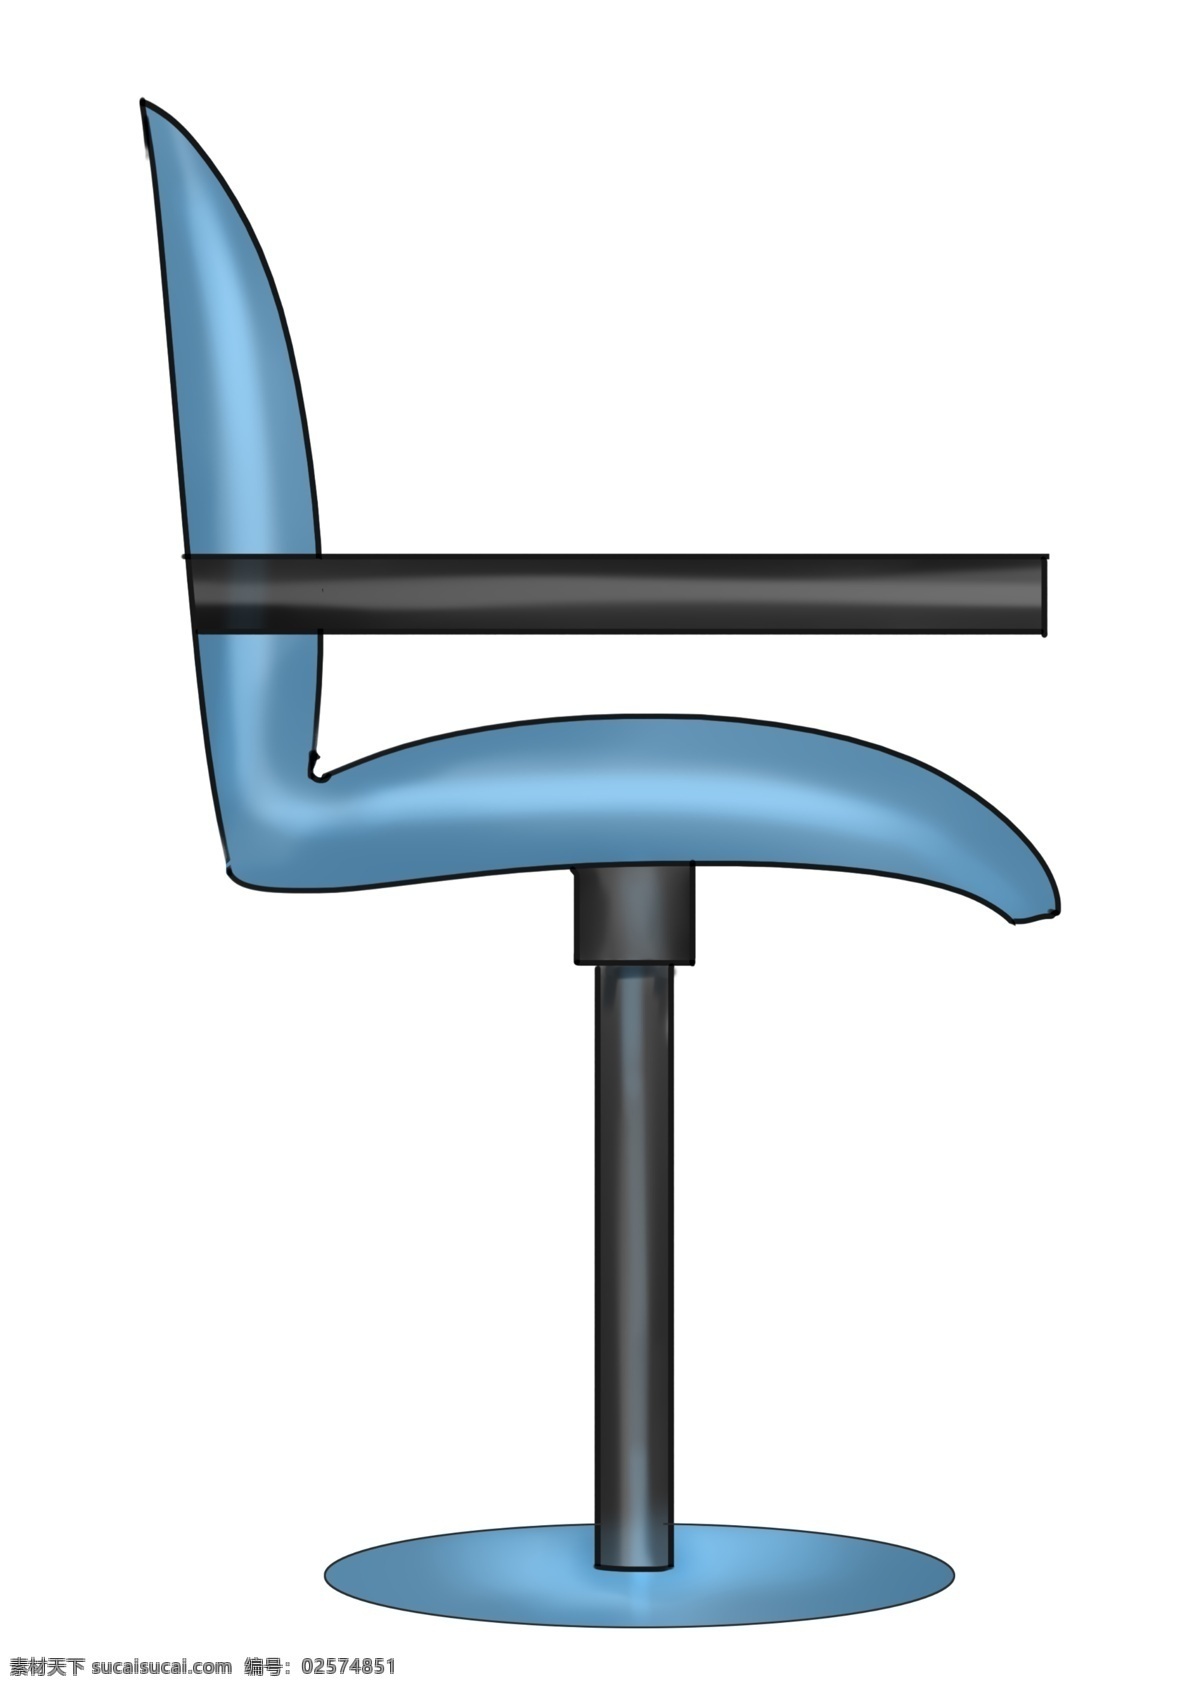 家具 椅子 装饰 插画 蓝色的椅子 家具椅子 漂亮的椅子 创意椅子 立体椅子 精美椅子 卡通椅子